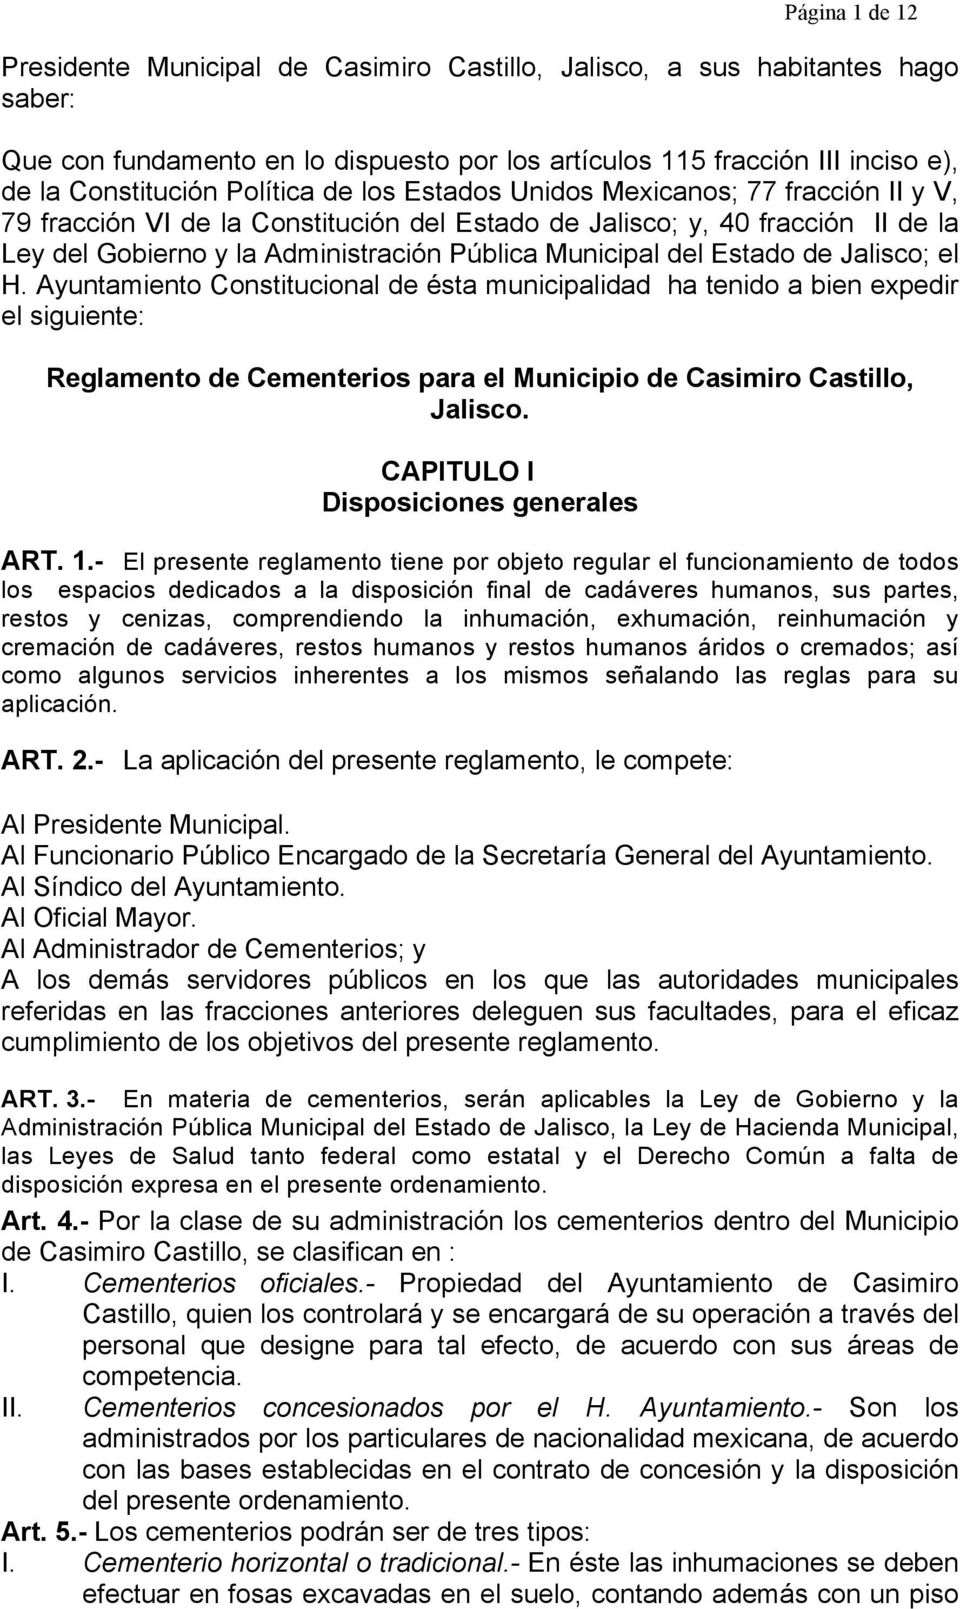 del Estado de Jalisco; el H. Ayuntamiento Constitucional de ésta municipalidad ha tenido a bien expedir el siguiente: Reglamento de Cementerios para el Municipio de Casimiro Castillo, Jalisco.